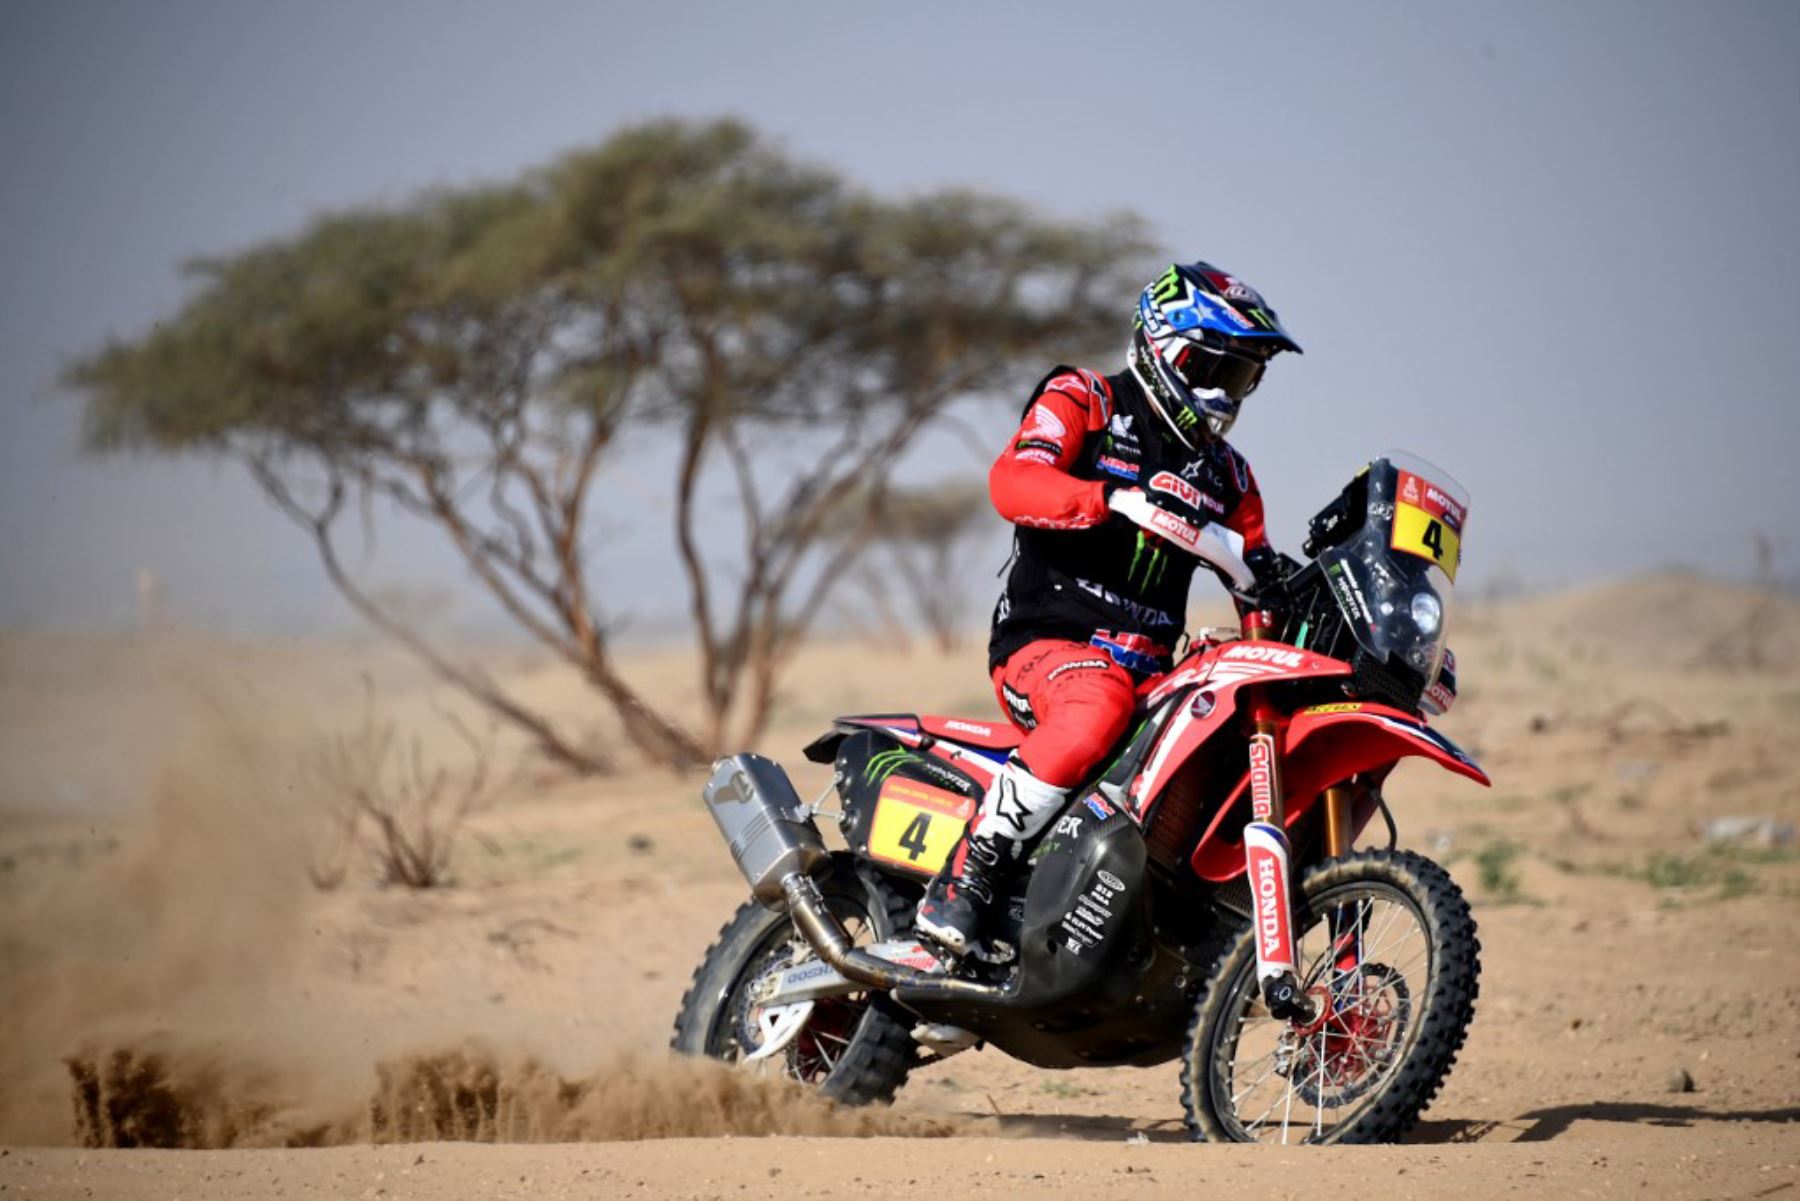 El chileno José Ignacio Cornejo  se impuso este lunes en la octava etapa de motos del Dakar 2021, de 709 kilómetros, entre las ciudades sauditas de Sakaka y Neom, por lo que consolidó su liderato. Foto: AFP